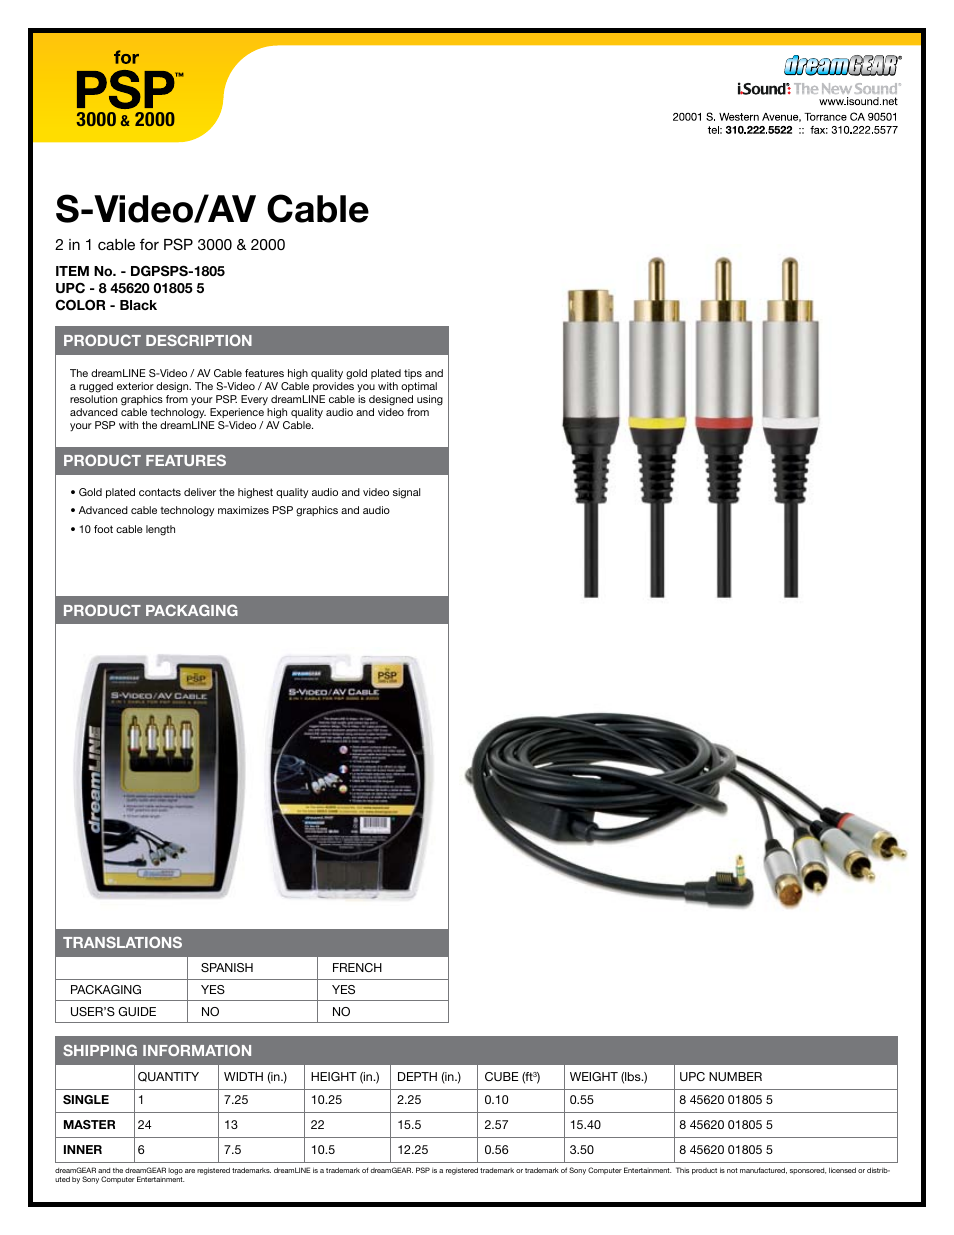 S-Video_AV Cable - Sell Sheet